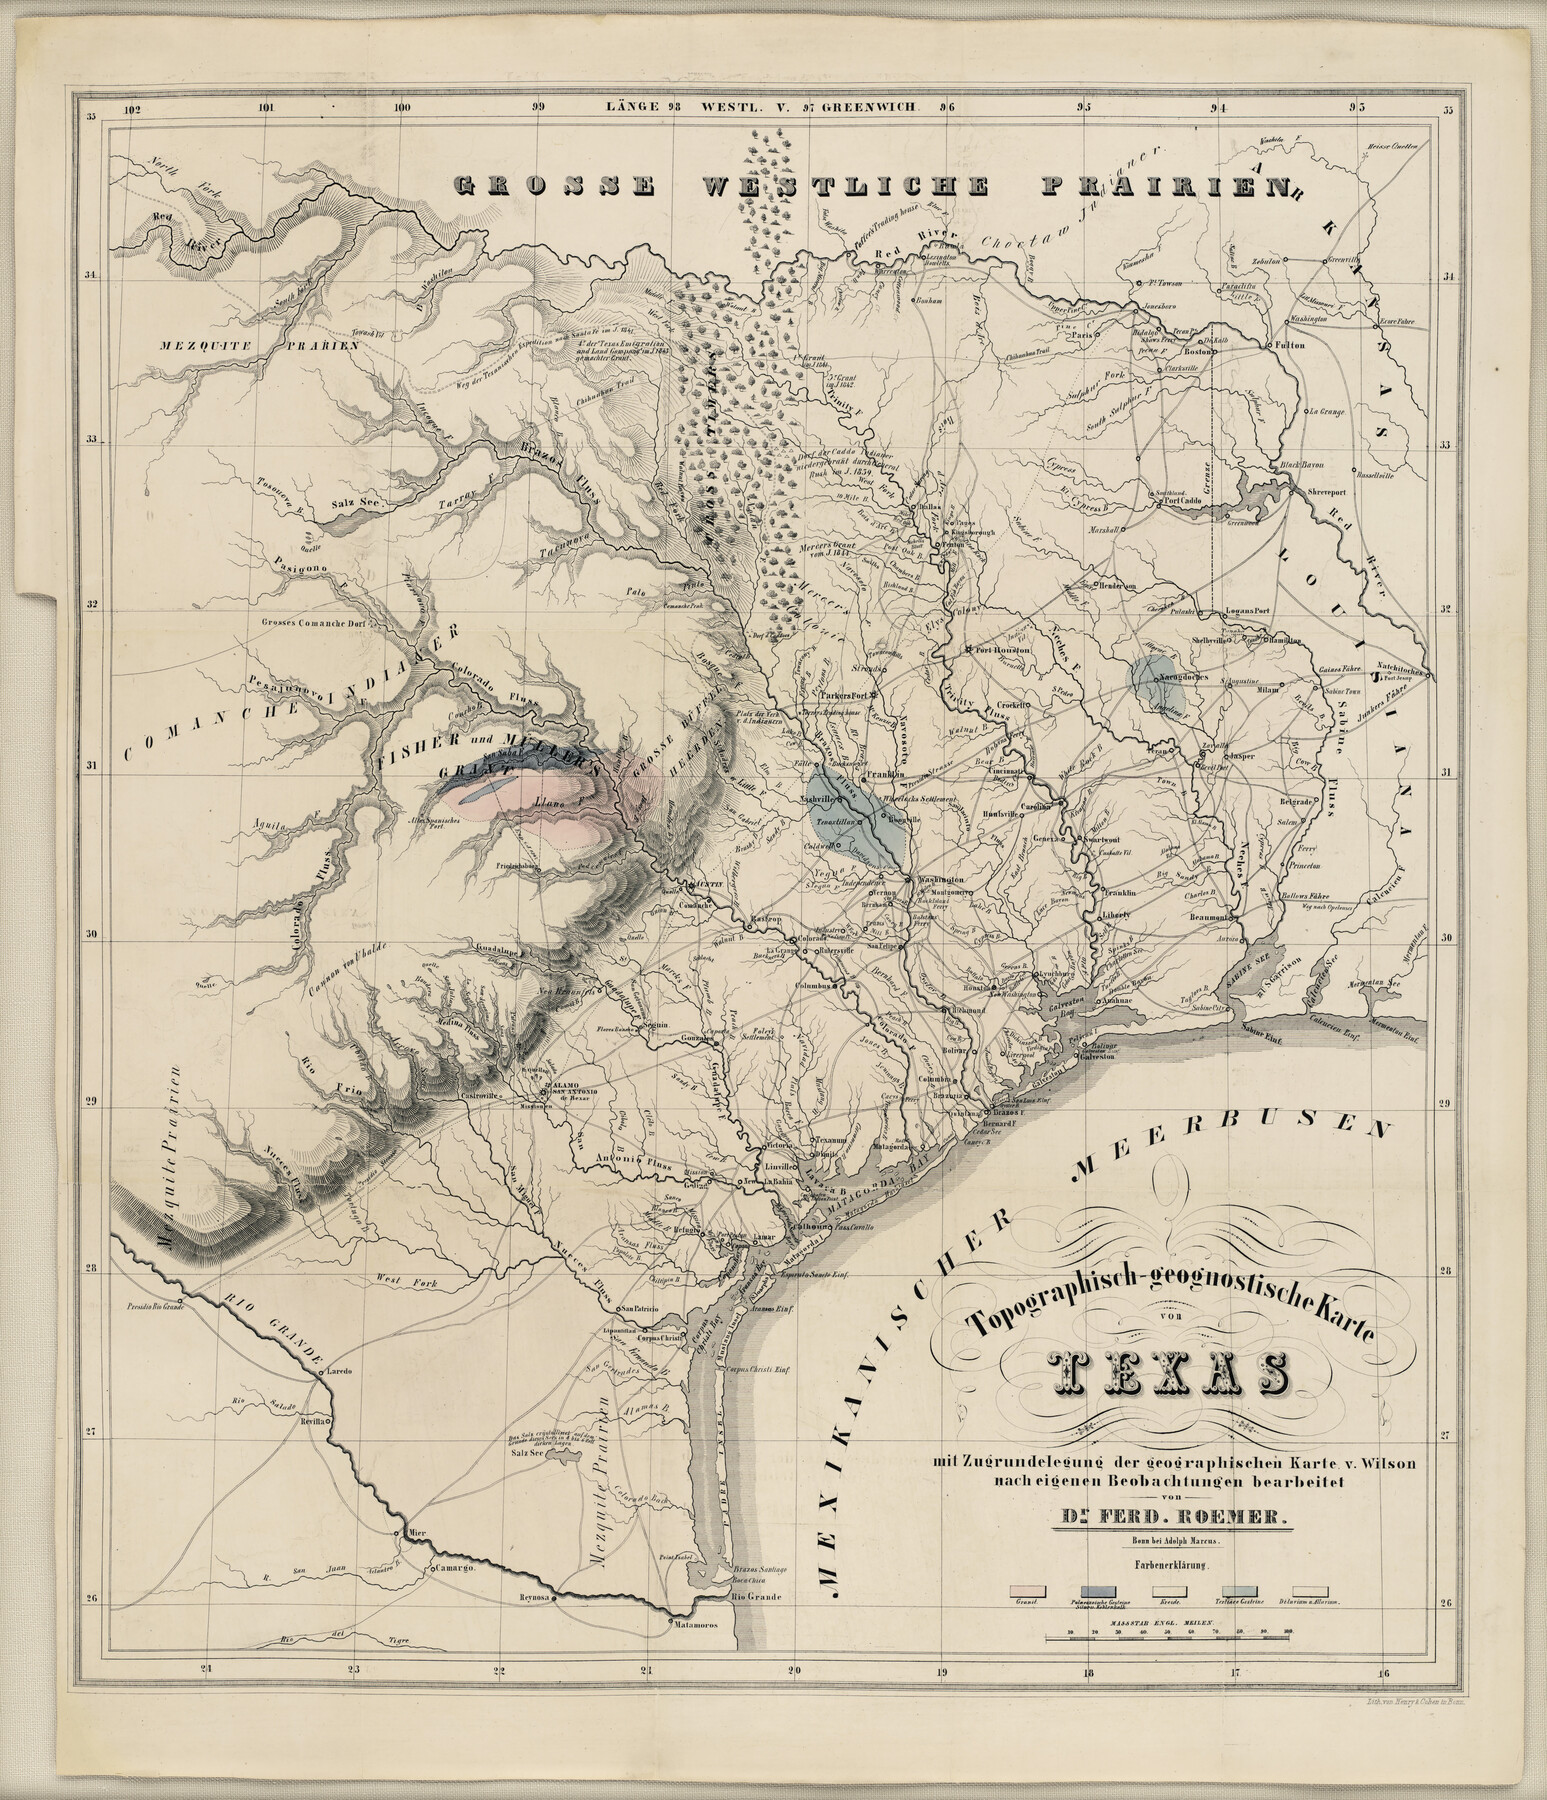 94099, Topographisch-geognostische Karte von Texas mit Zugrundelegung der geographischen Karte v. Wilson nach eigenen Beobachtungen bearbeitet von Dr. Ferd. Roemer, Holcomb Digital Map Collection